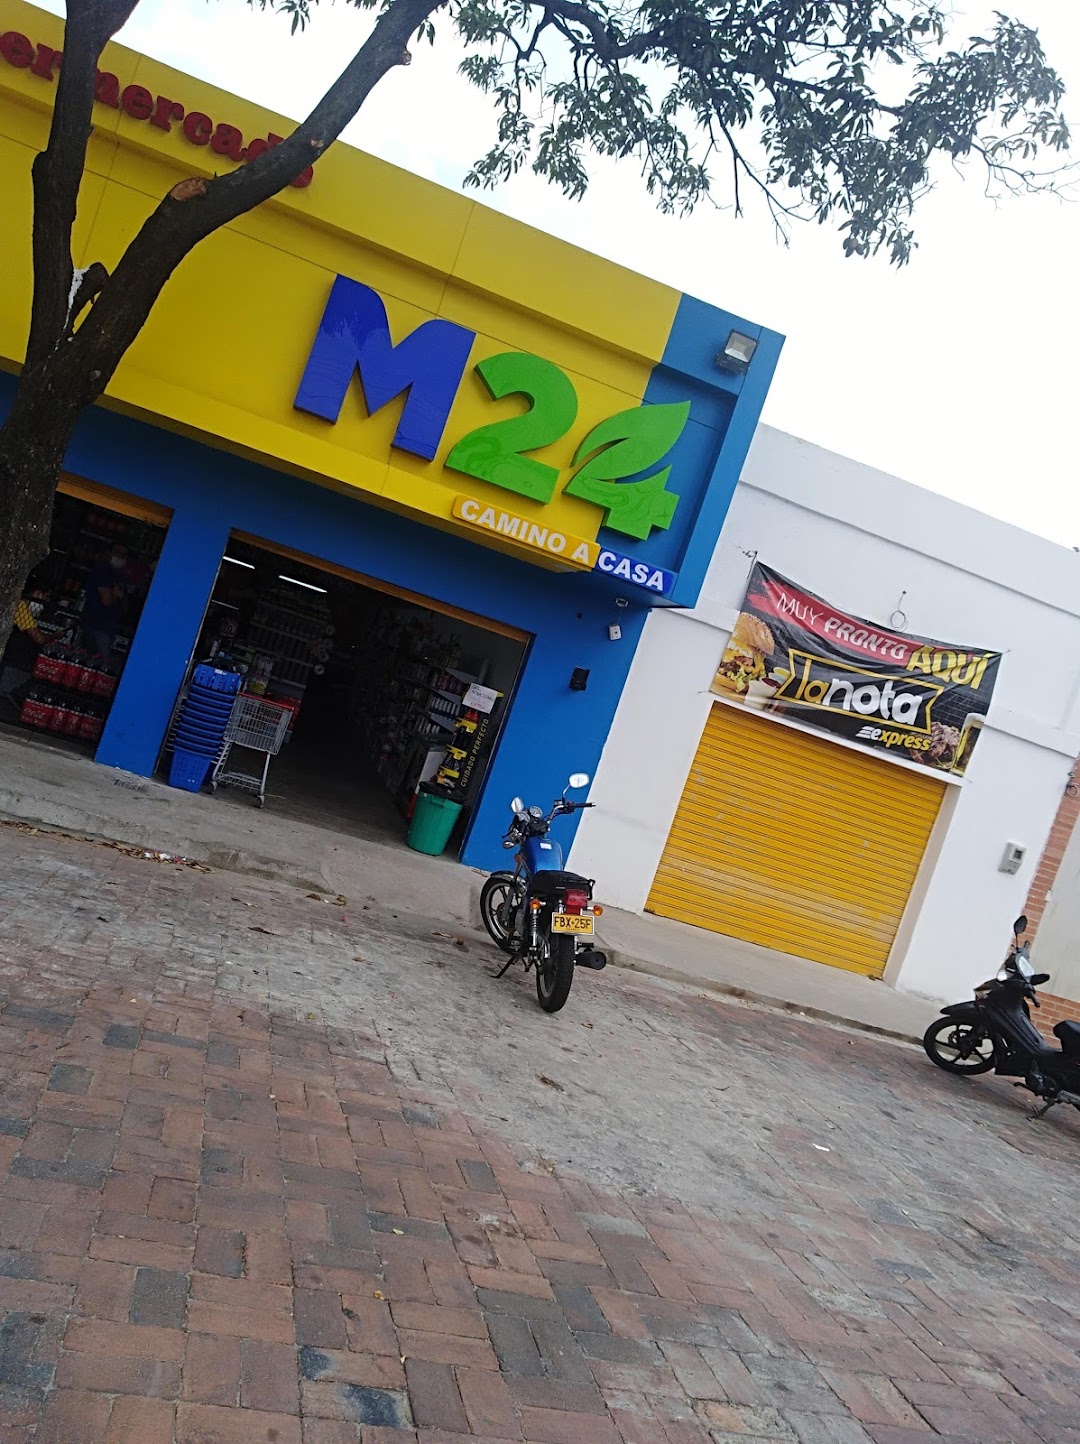 Supermercado M24